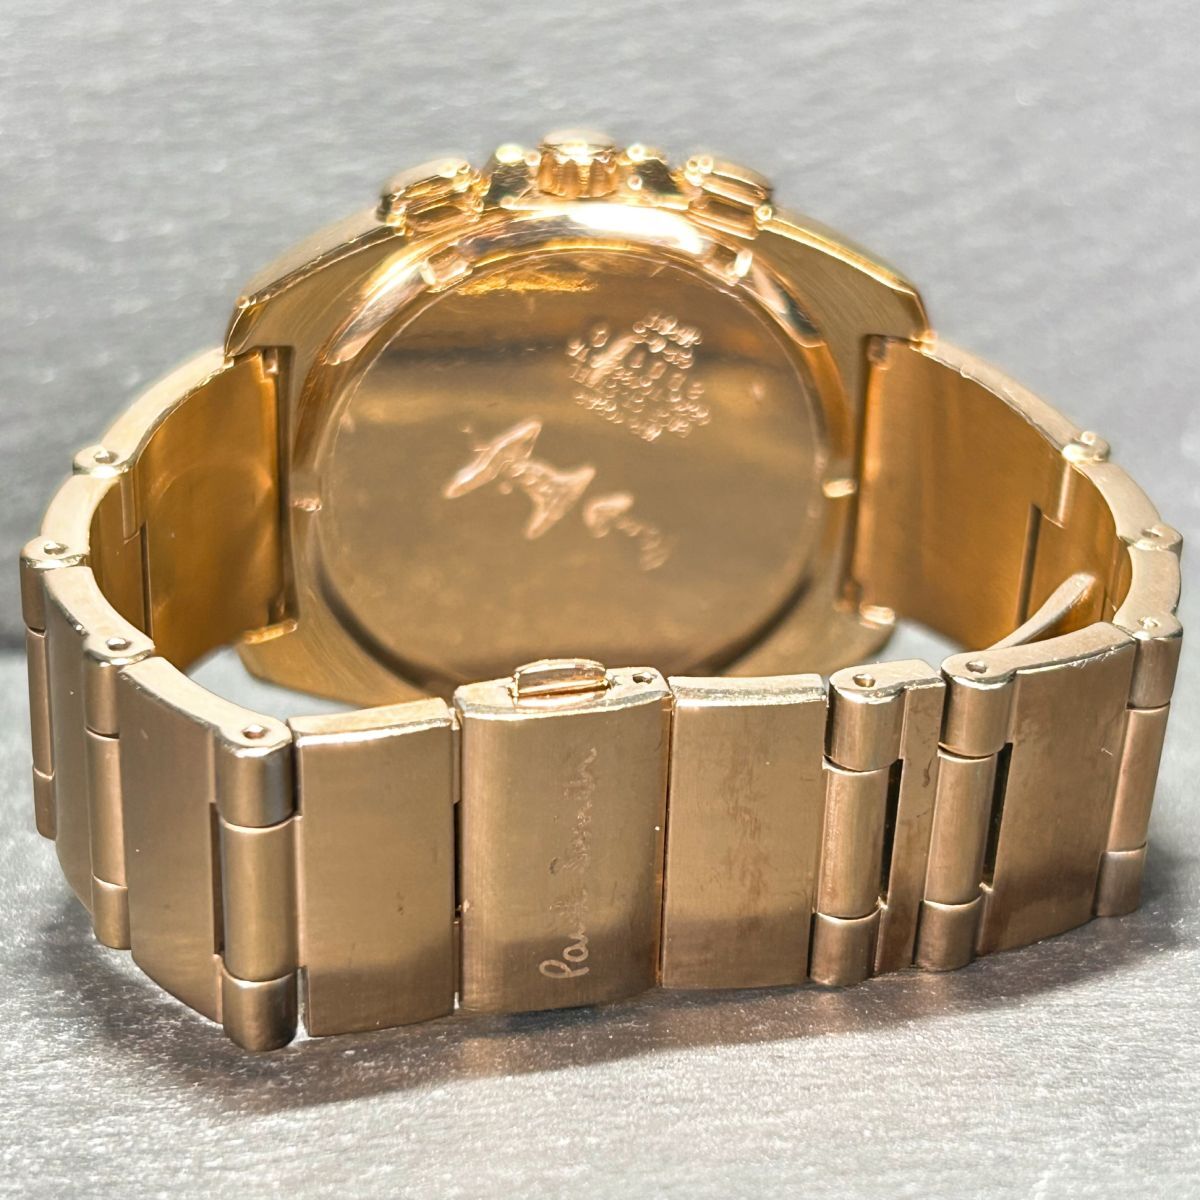  редкий Paul Smith Paul Smith 0520-T013694 наручные часы кварц аналог хронограф календарь Gold новый товар батарейка заменена рабочее состояние подтверждено 